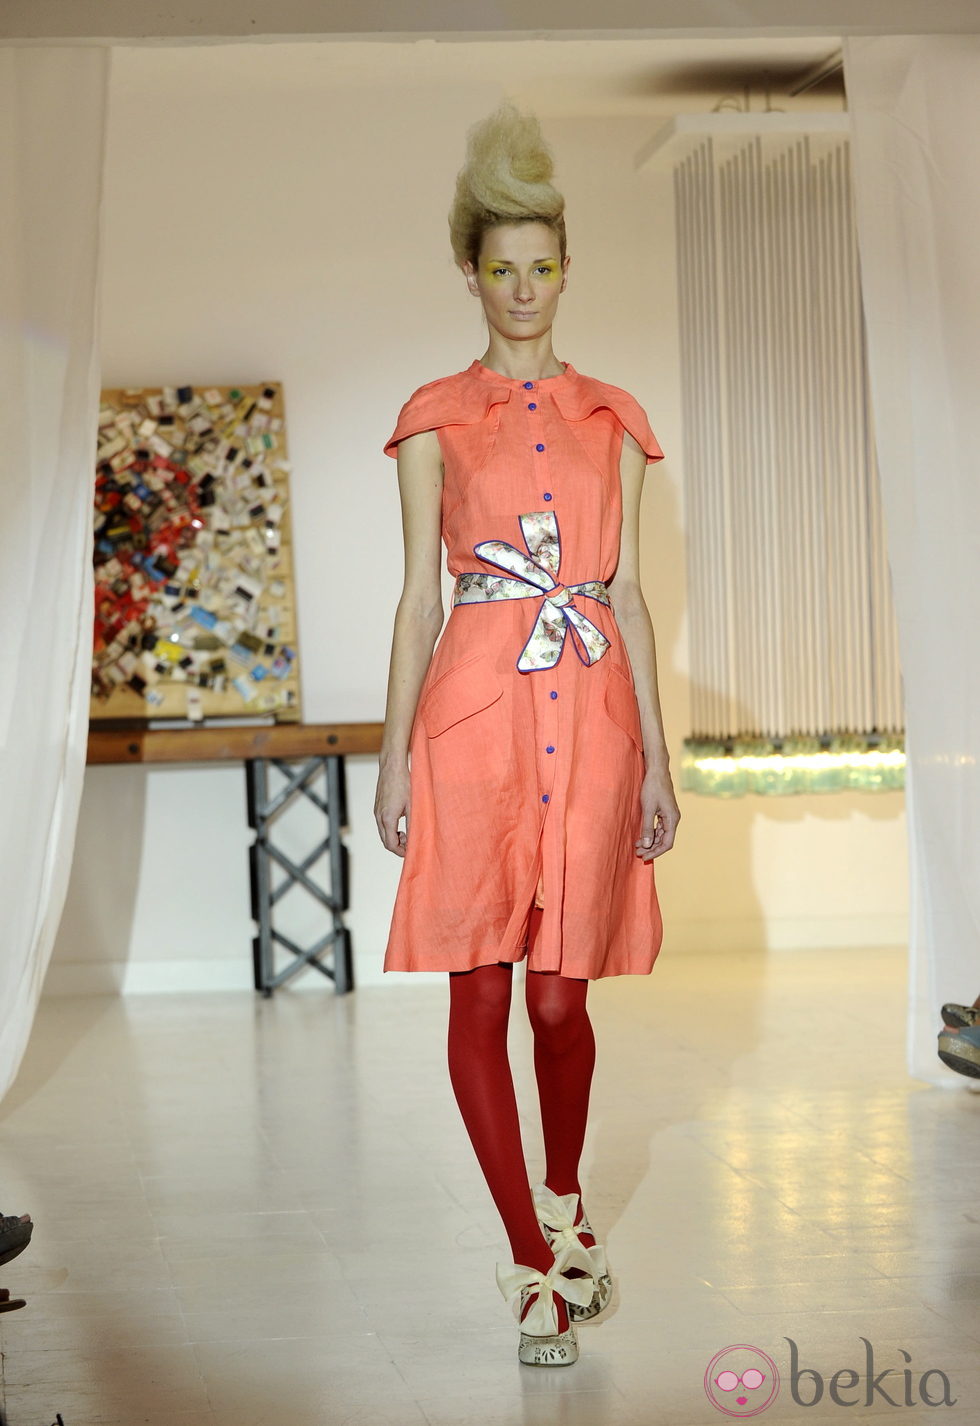 Vestido naranja de Josep Font, colección primavera 2012